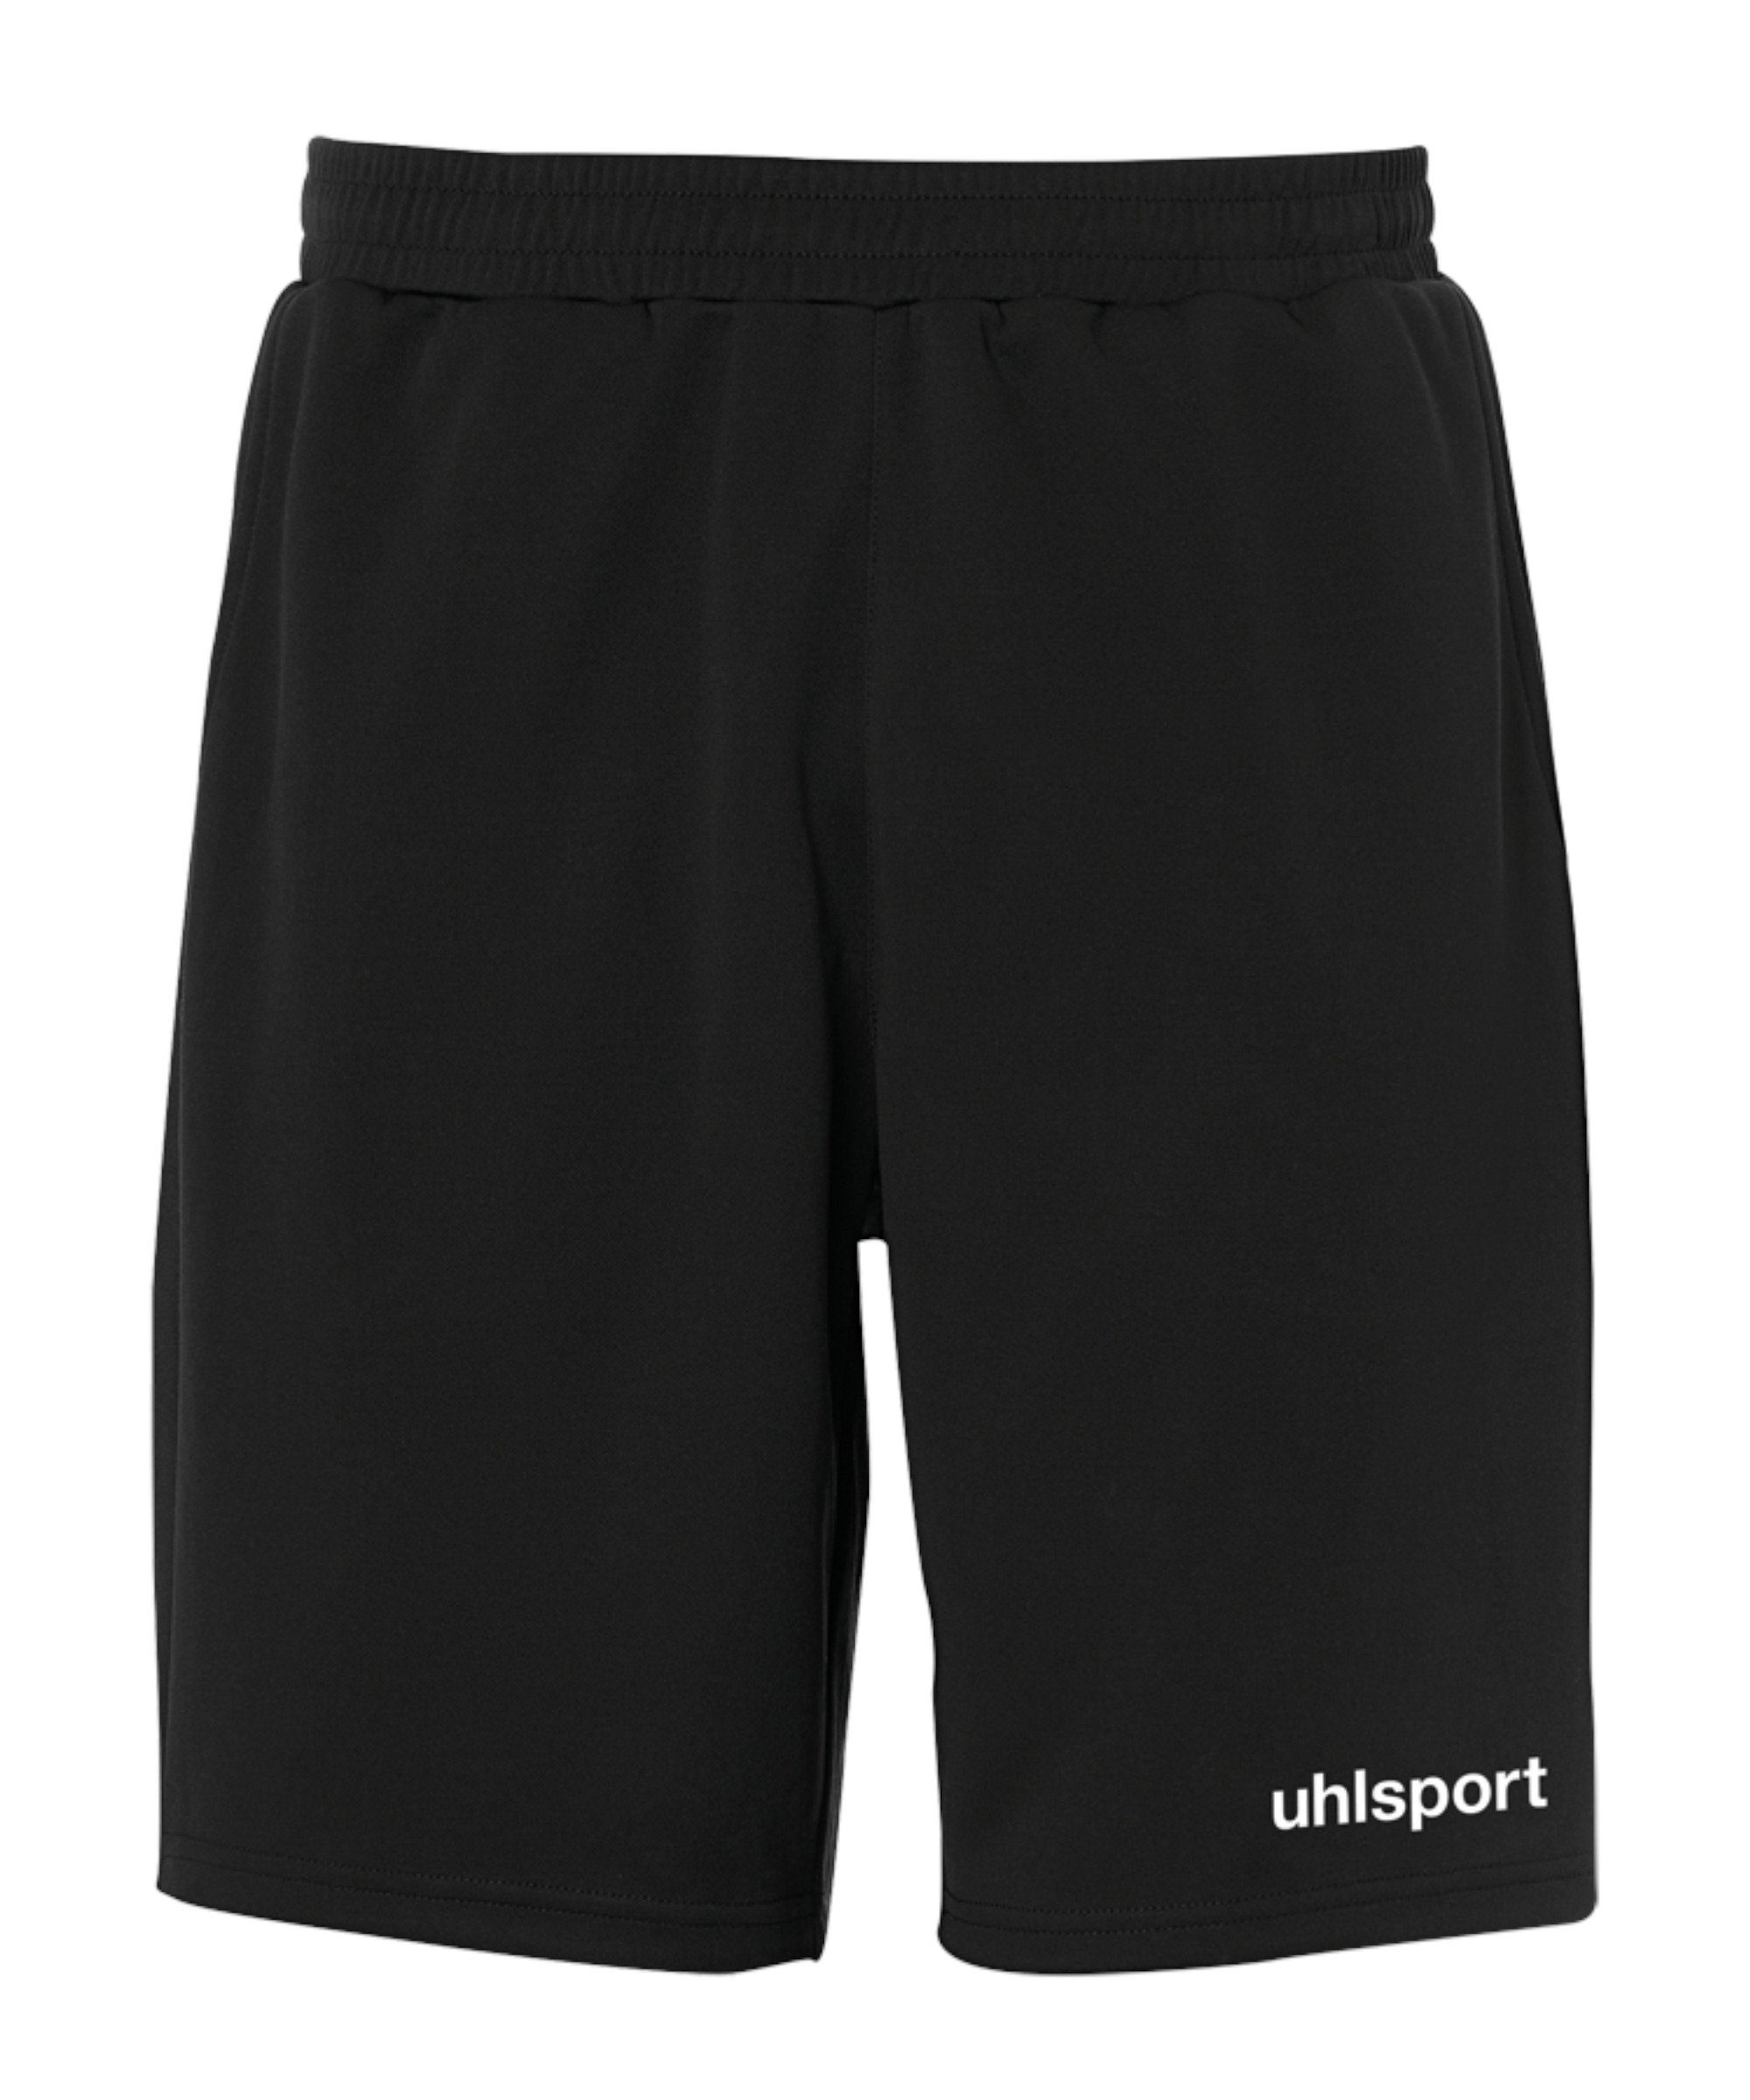 Sporthose Essential schwarz PES-Short uhlsport